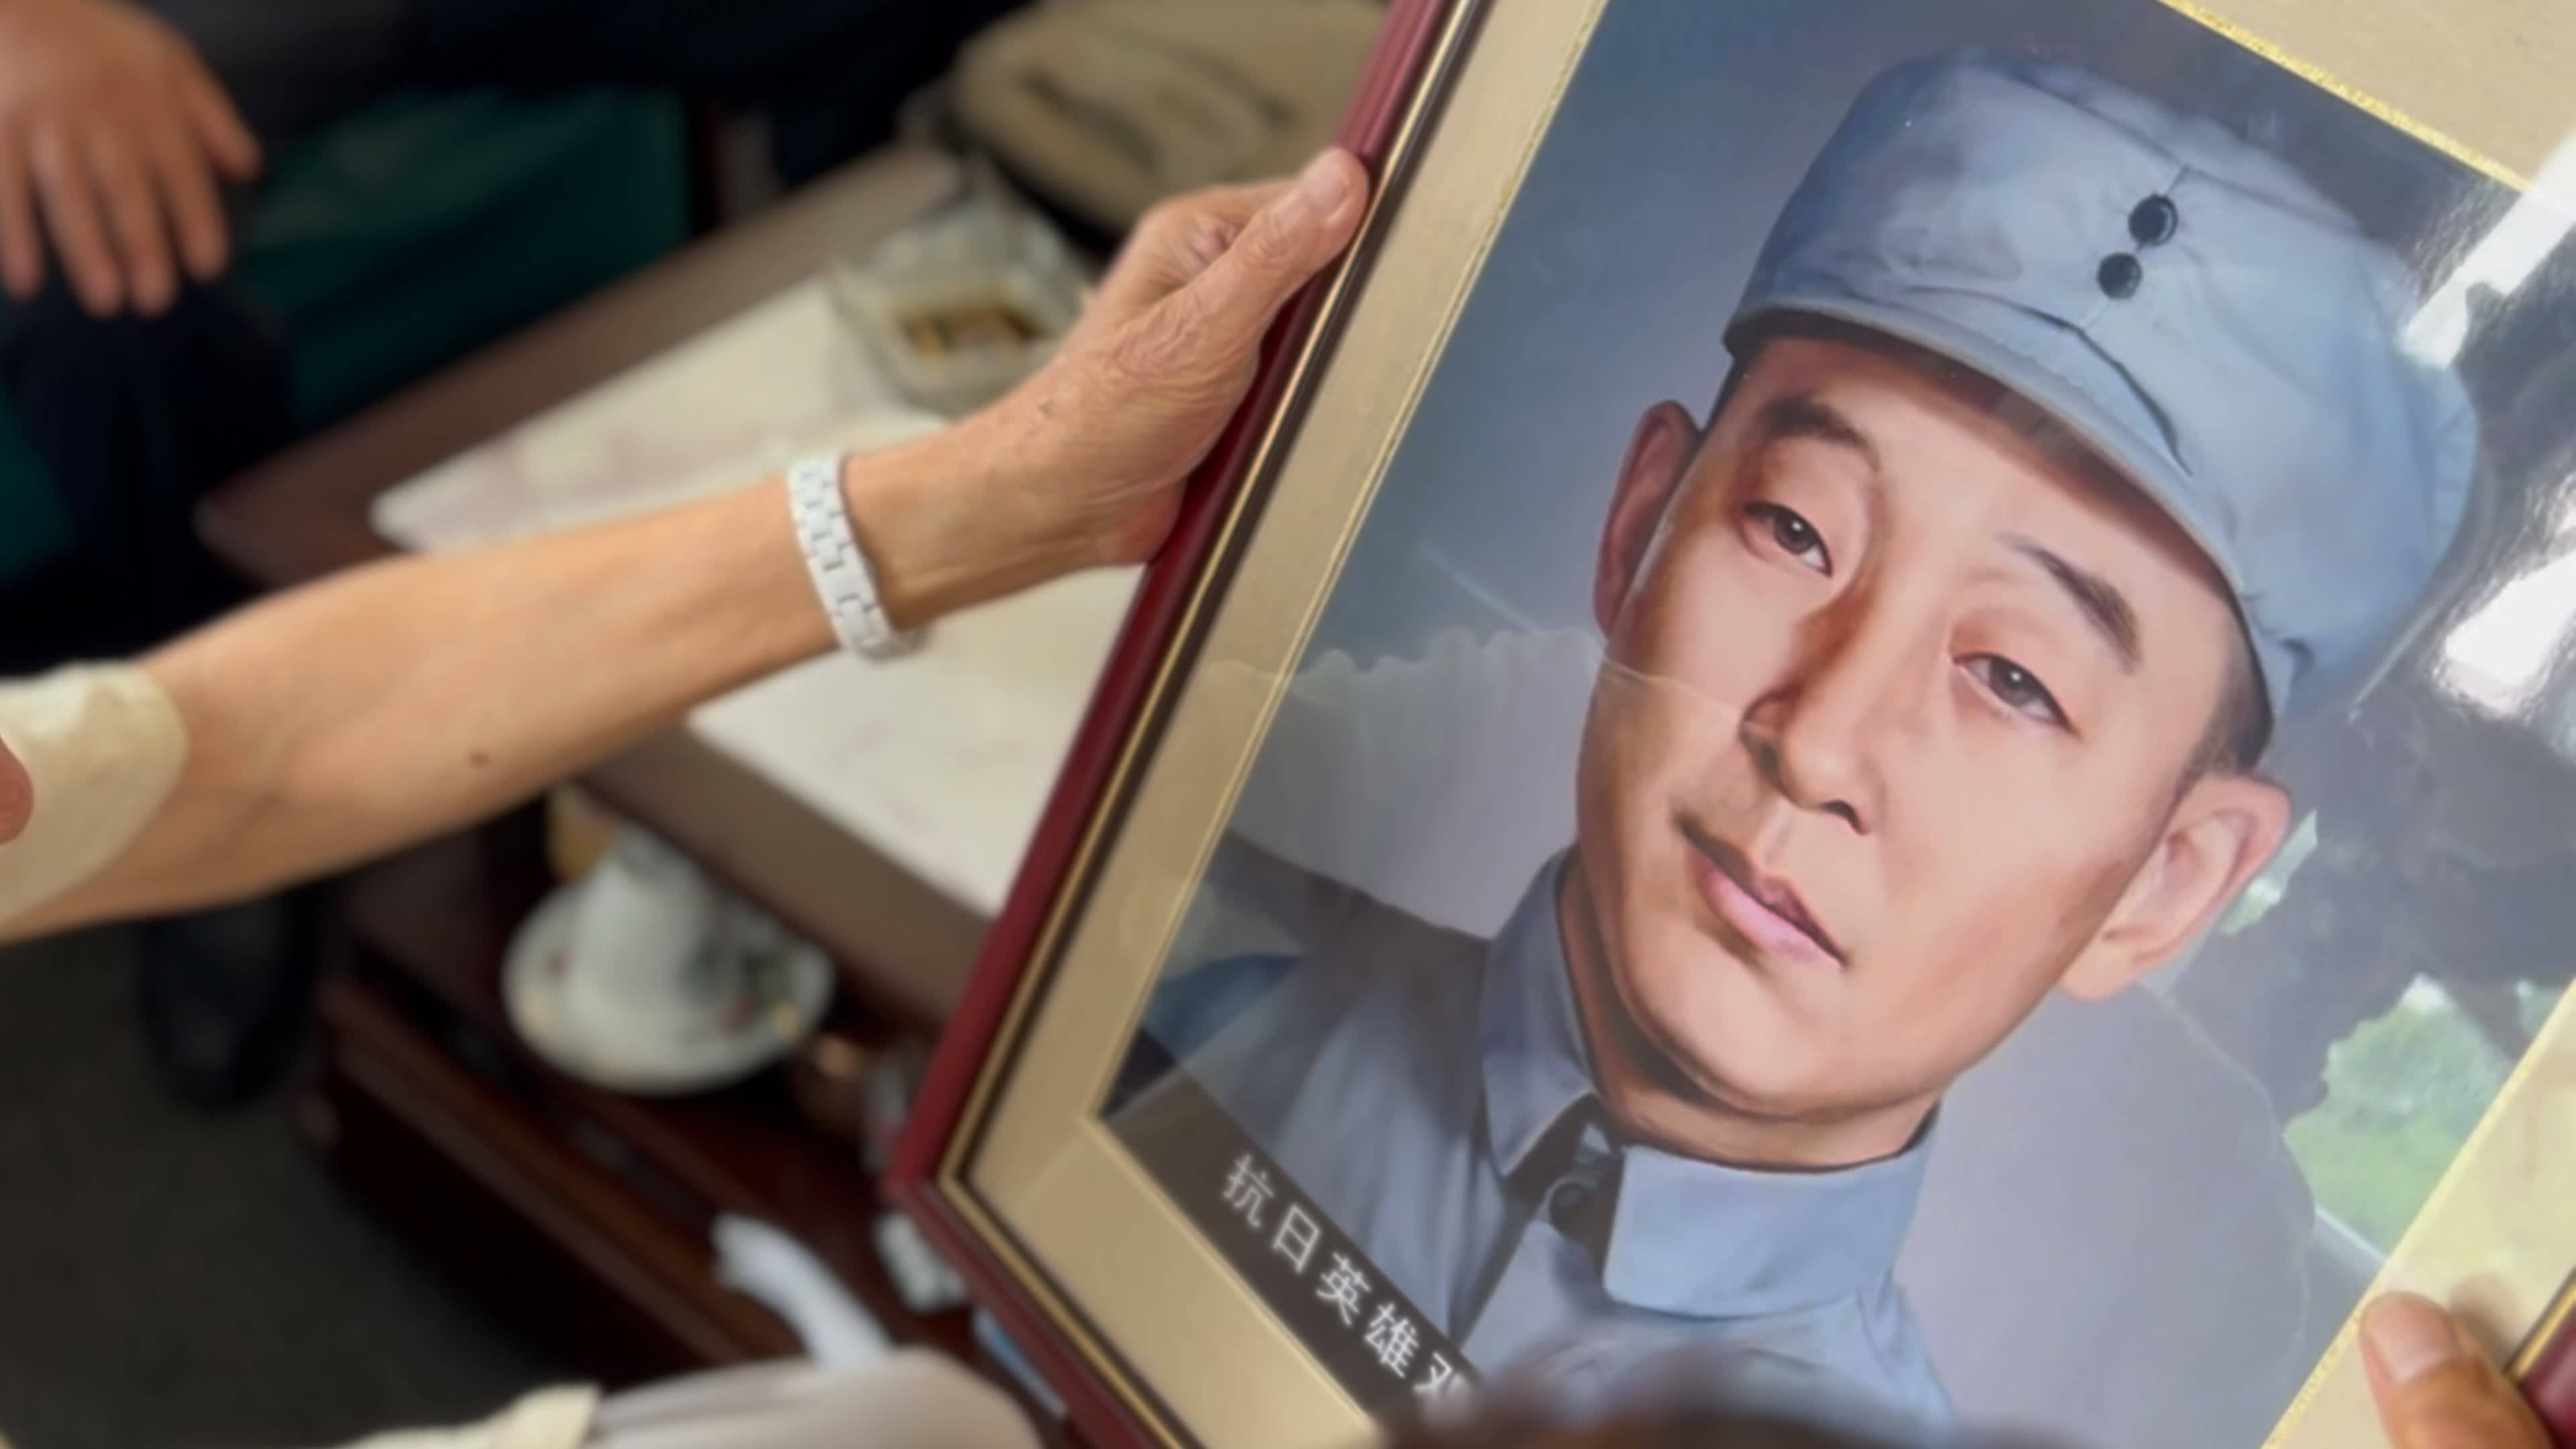 “神笔警探”林宇辉模拟抗日烈士画像 86岁老人终见父亲容貌！